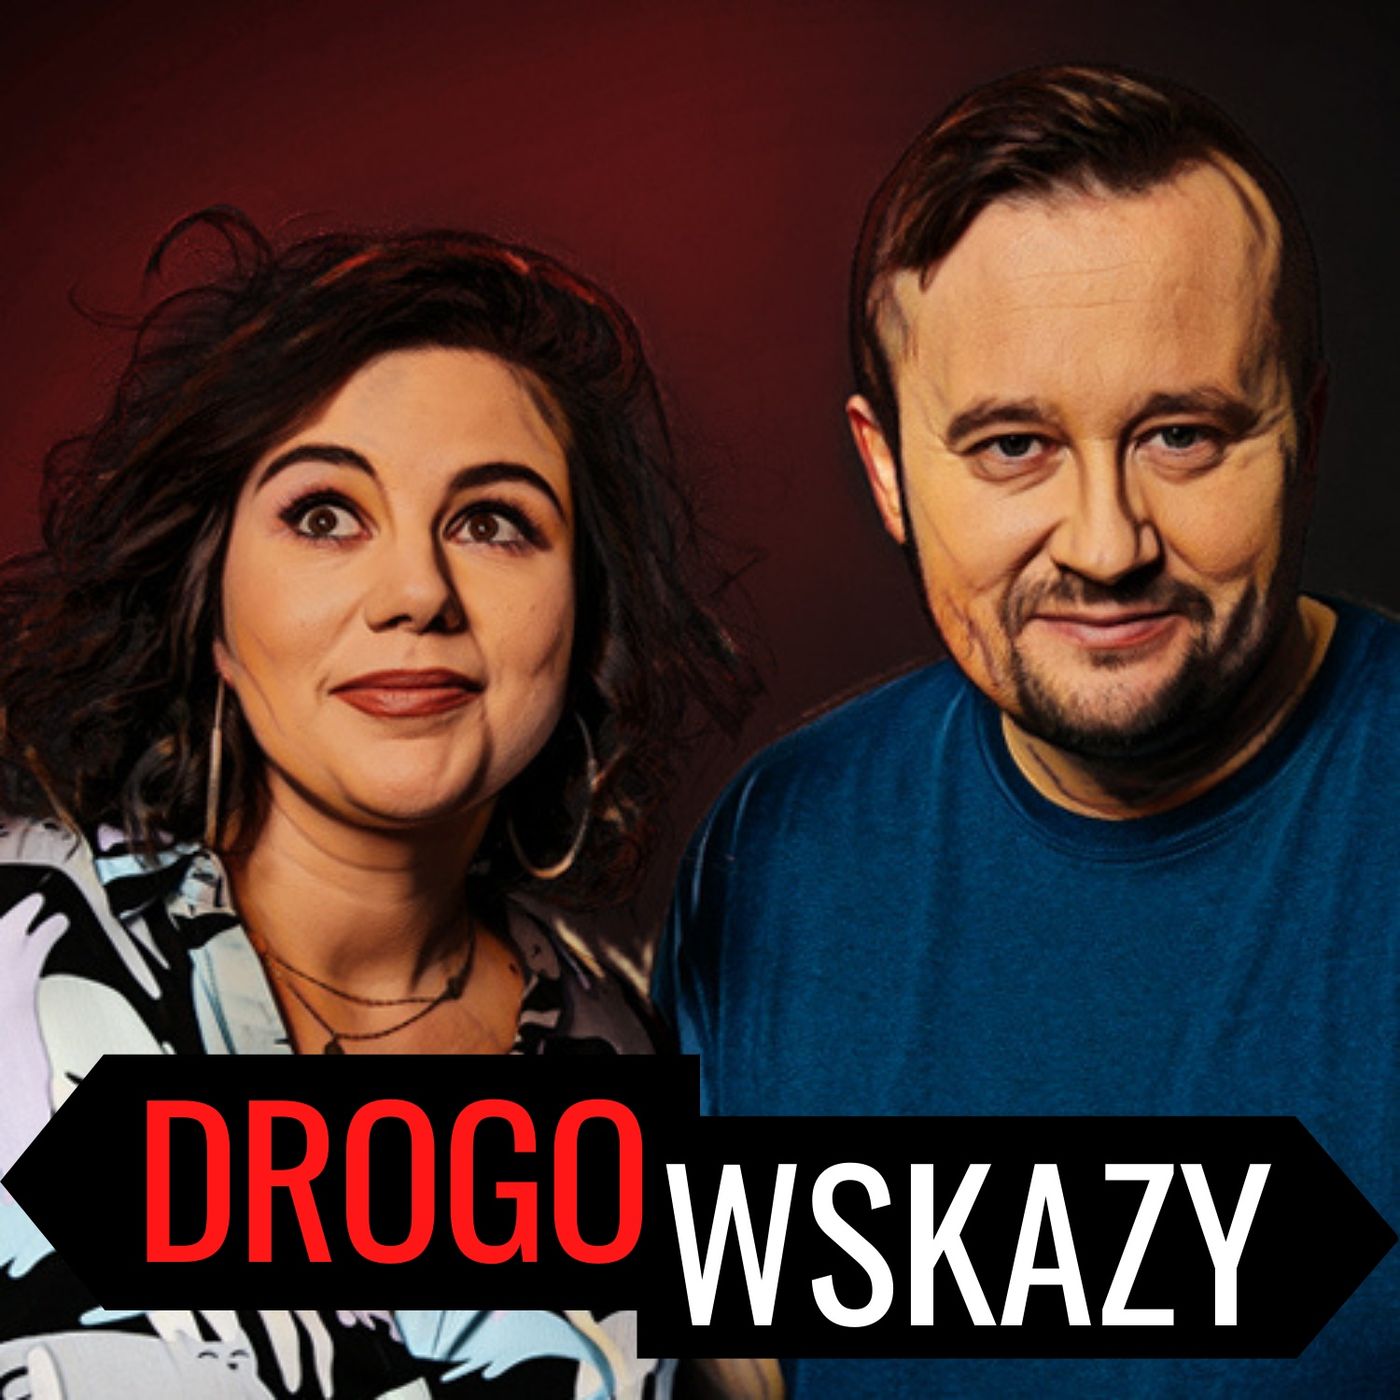 Drogowskazy… o Drogowskazach i pracy dziennikarza radiowego